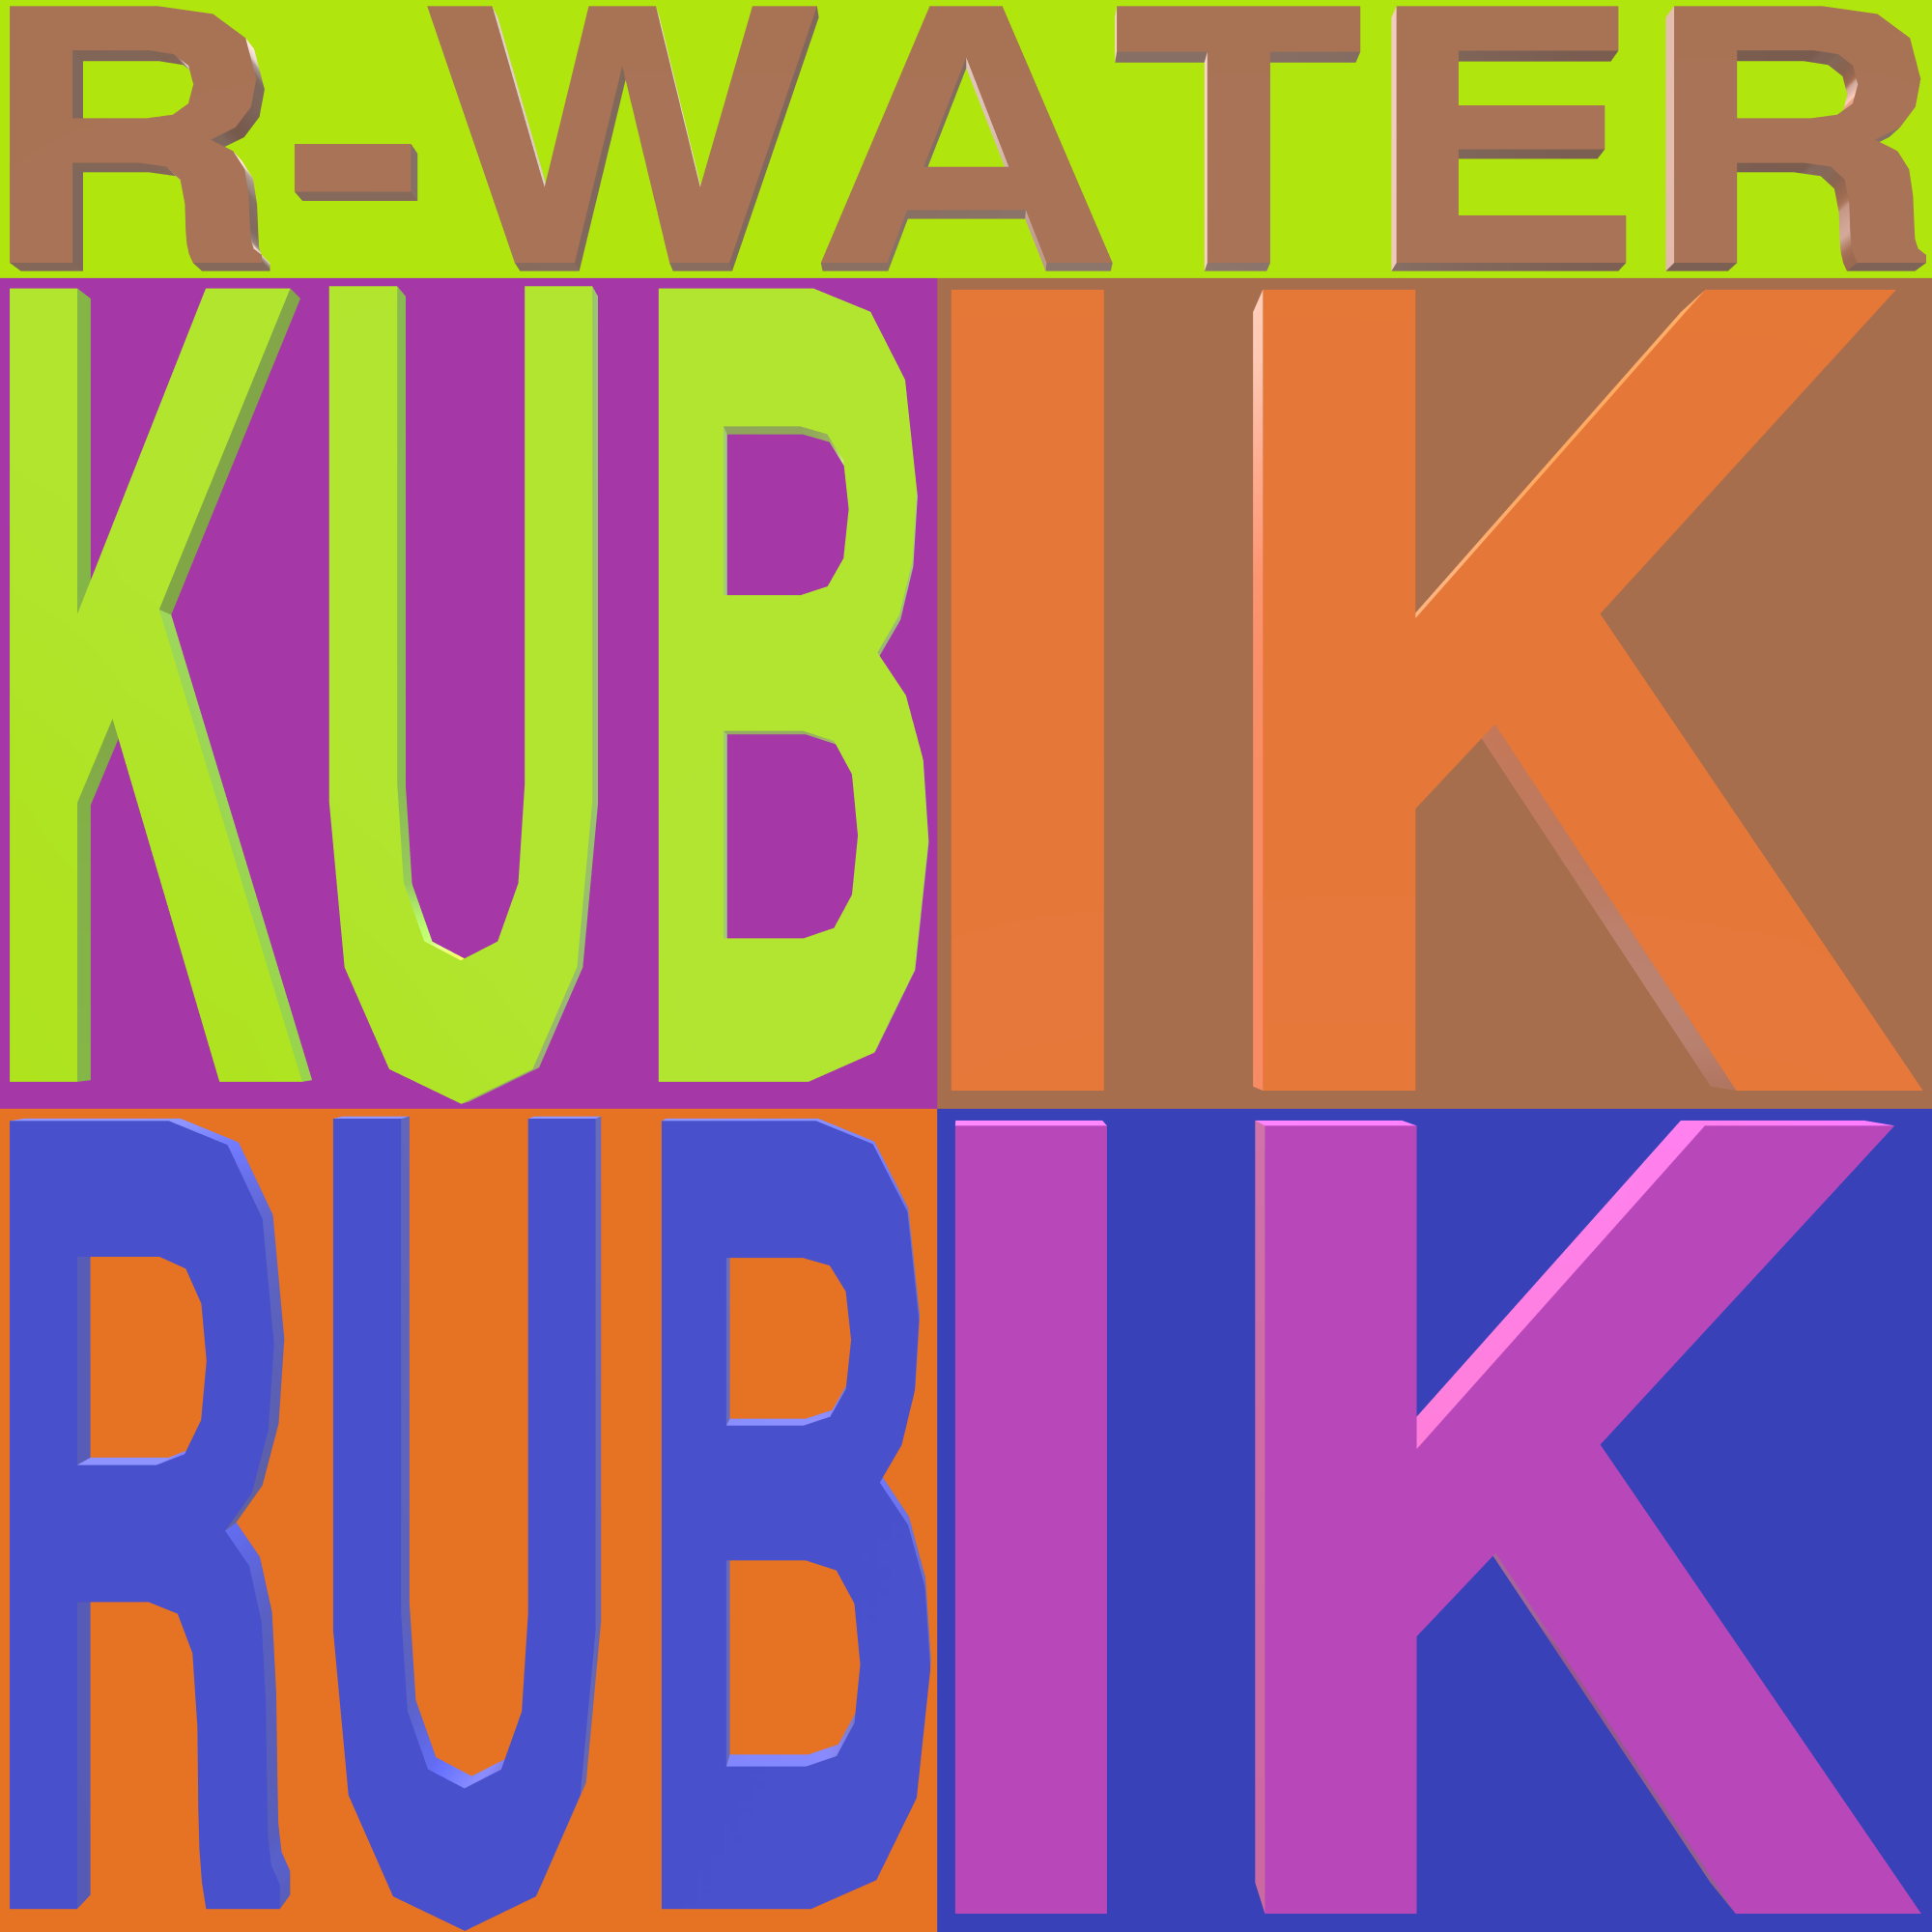 R-Water — Kubik Rubik cover artwork